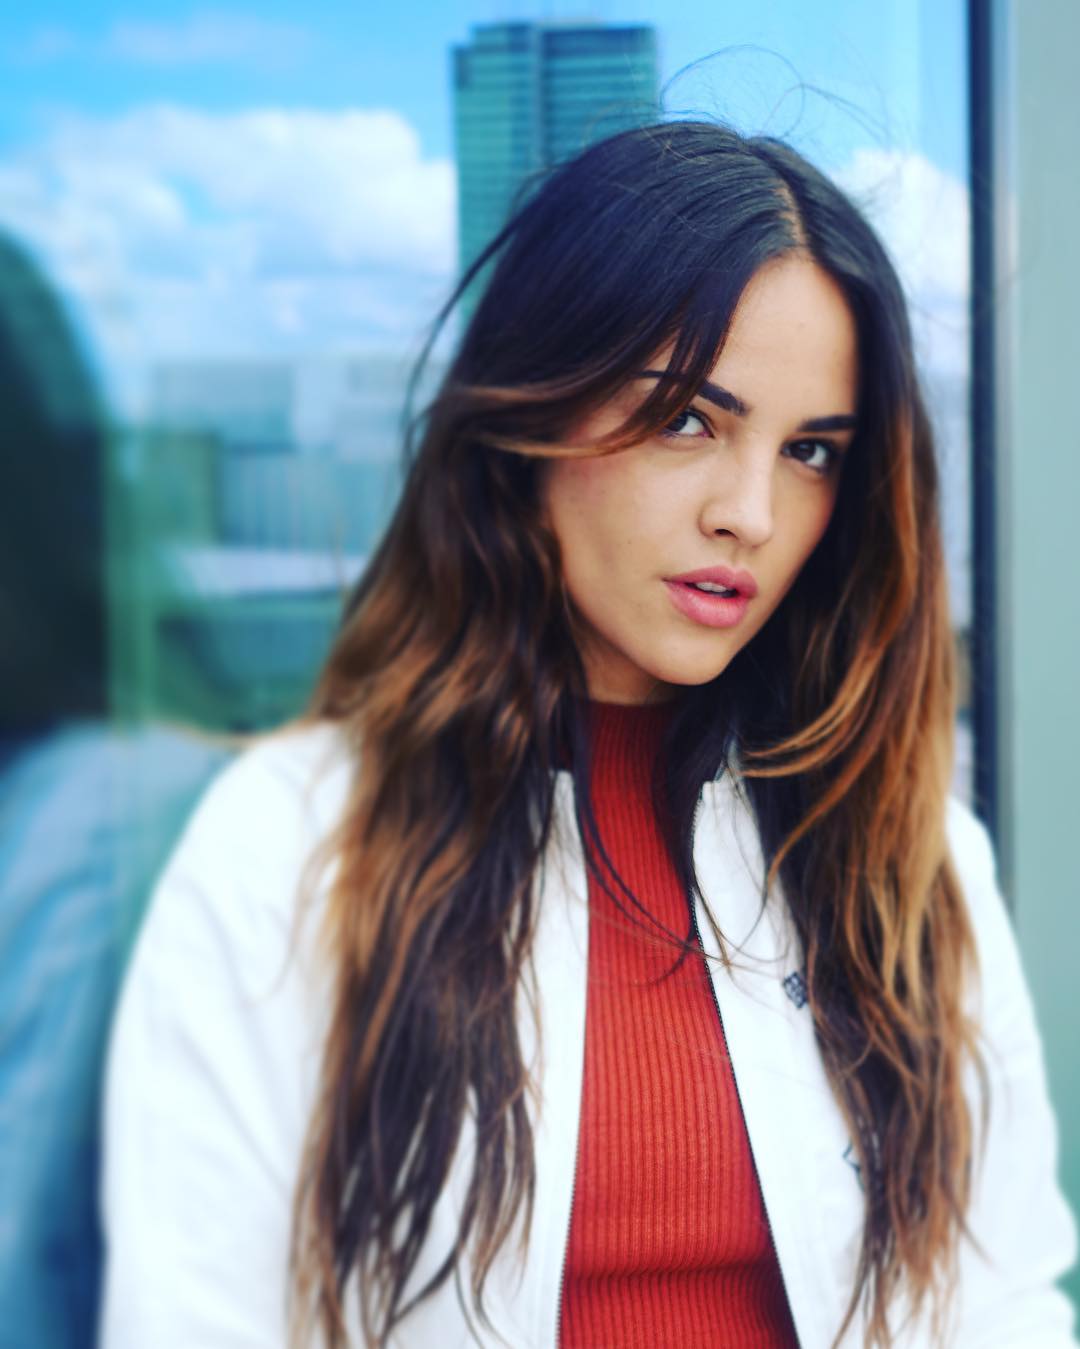 Eiza Gonzalez â€“ Instagram and Social media 2